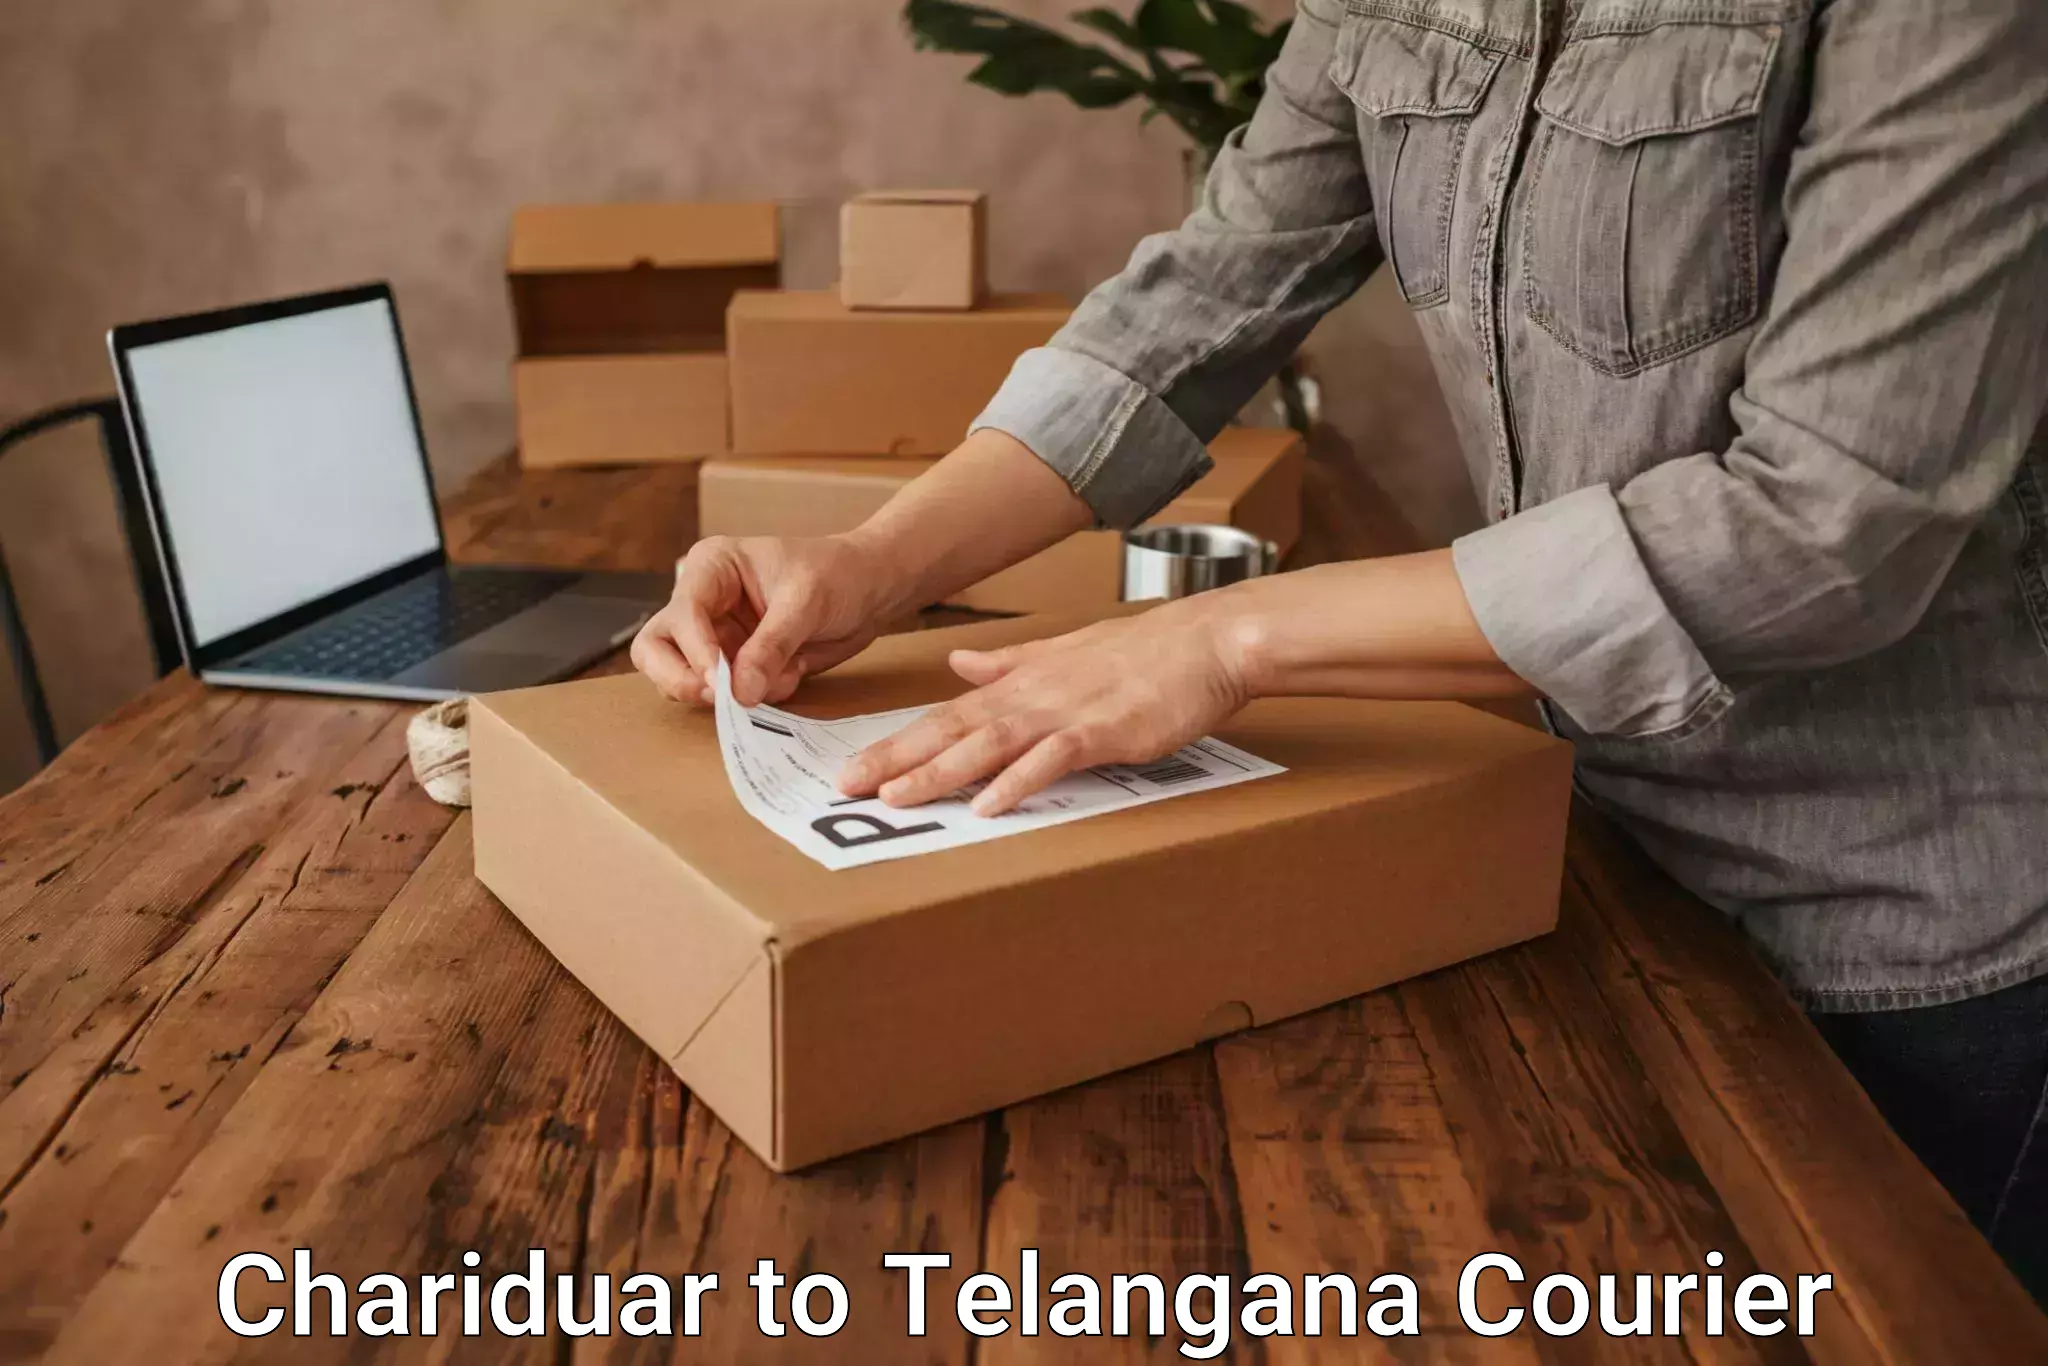 24-hour courier service Chariduar to Mahabubnagar